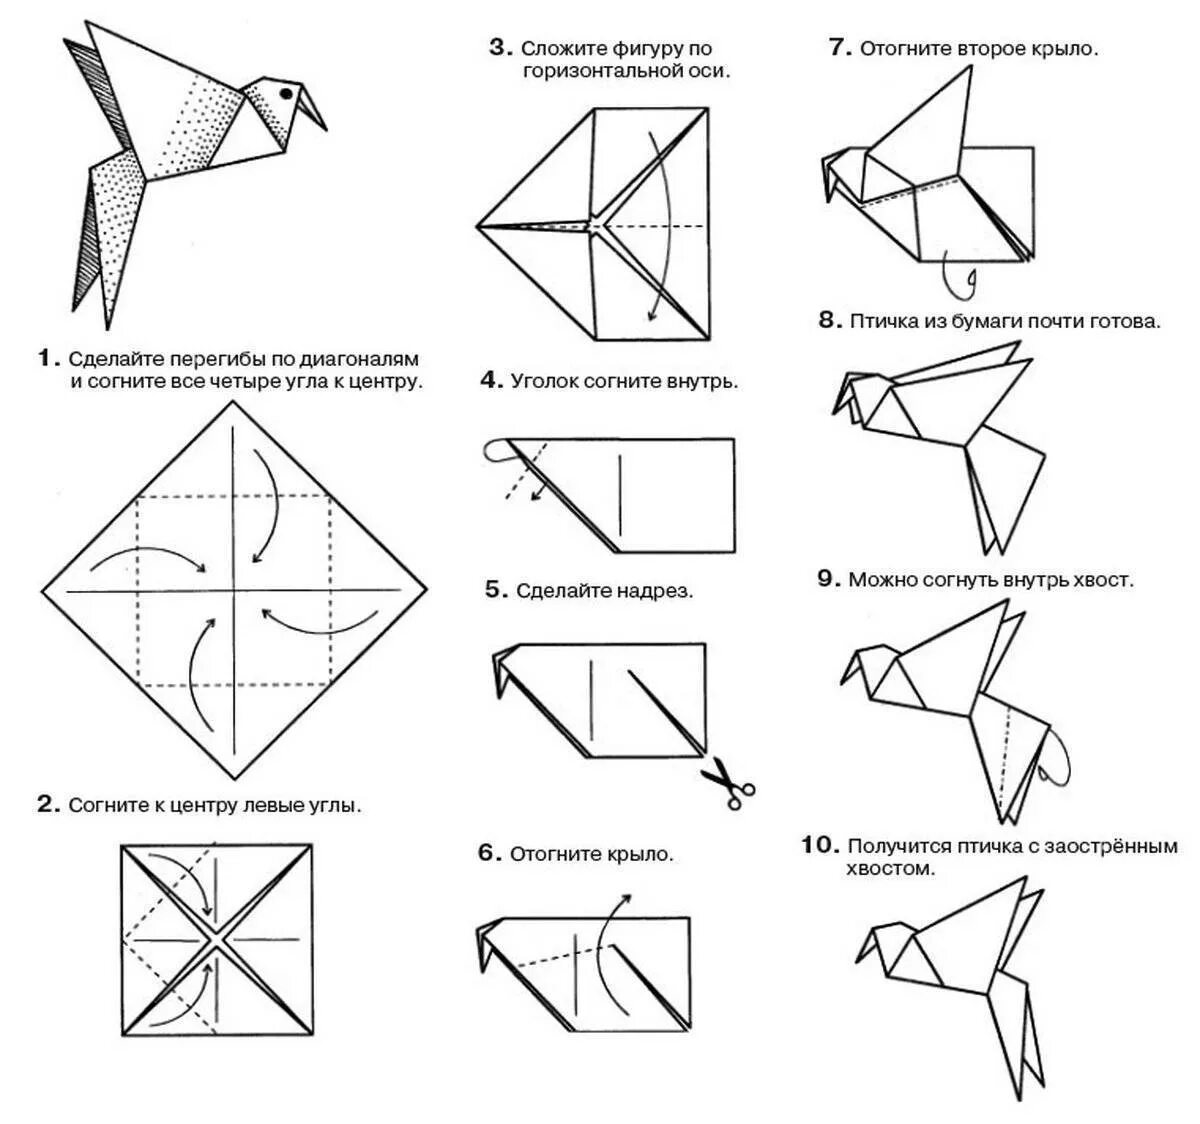 Включи оригами сделать. Птичка из бумаги схема складывания пошагово. Птица оригами из бумаги простая схема для детей. Оригами из бумаги пошагово 3 класс. Оригами из бумаги для детей инструкция пошагово.